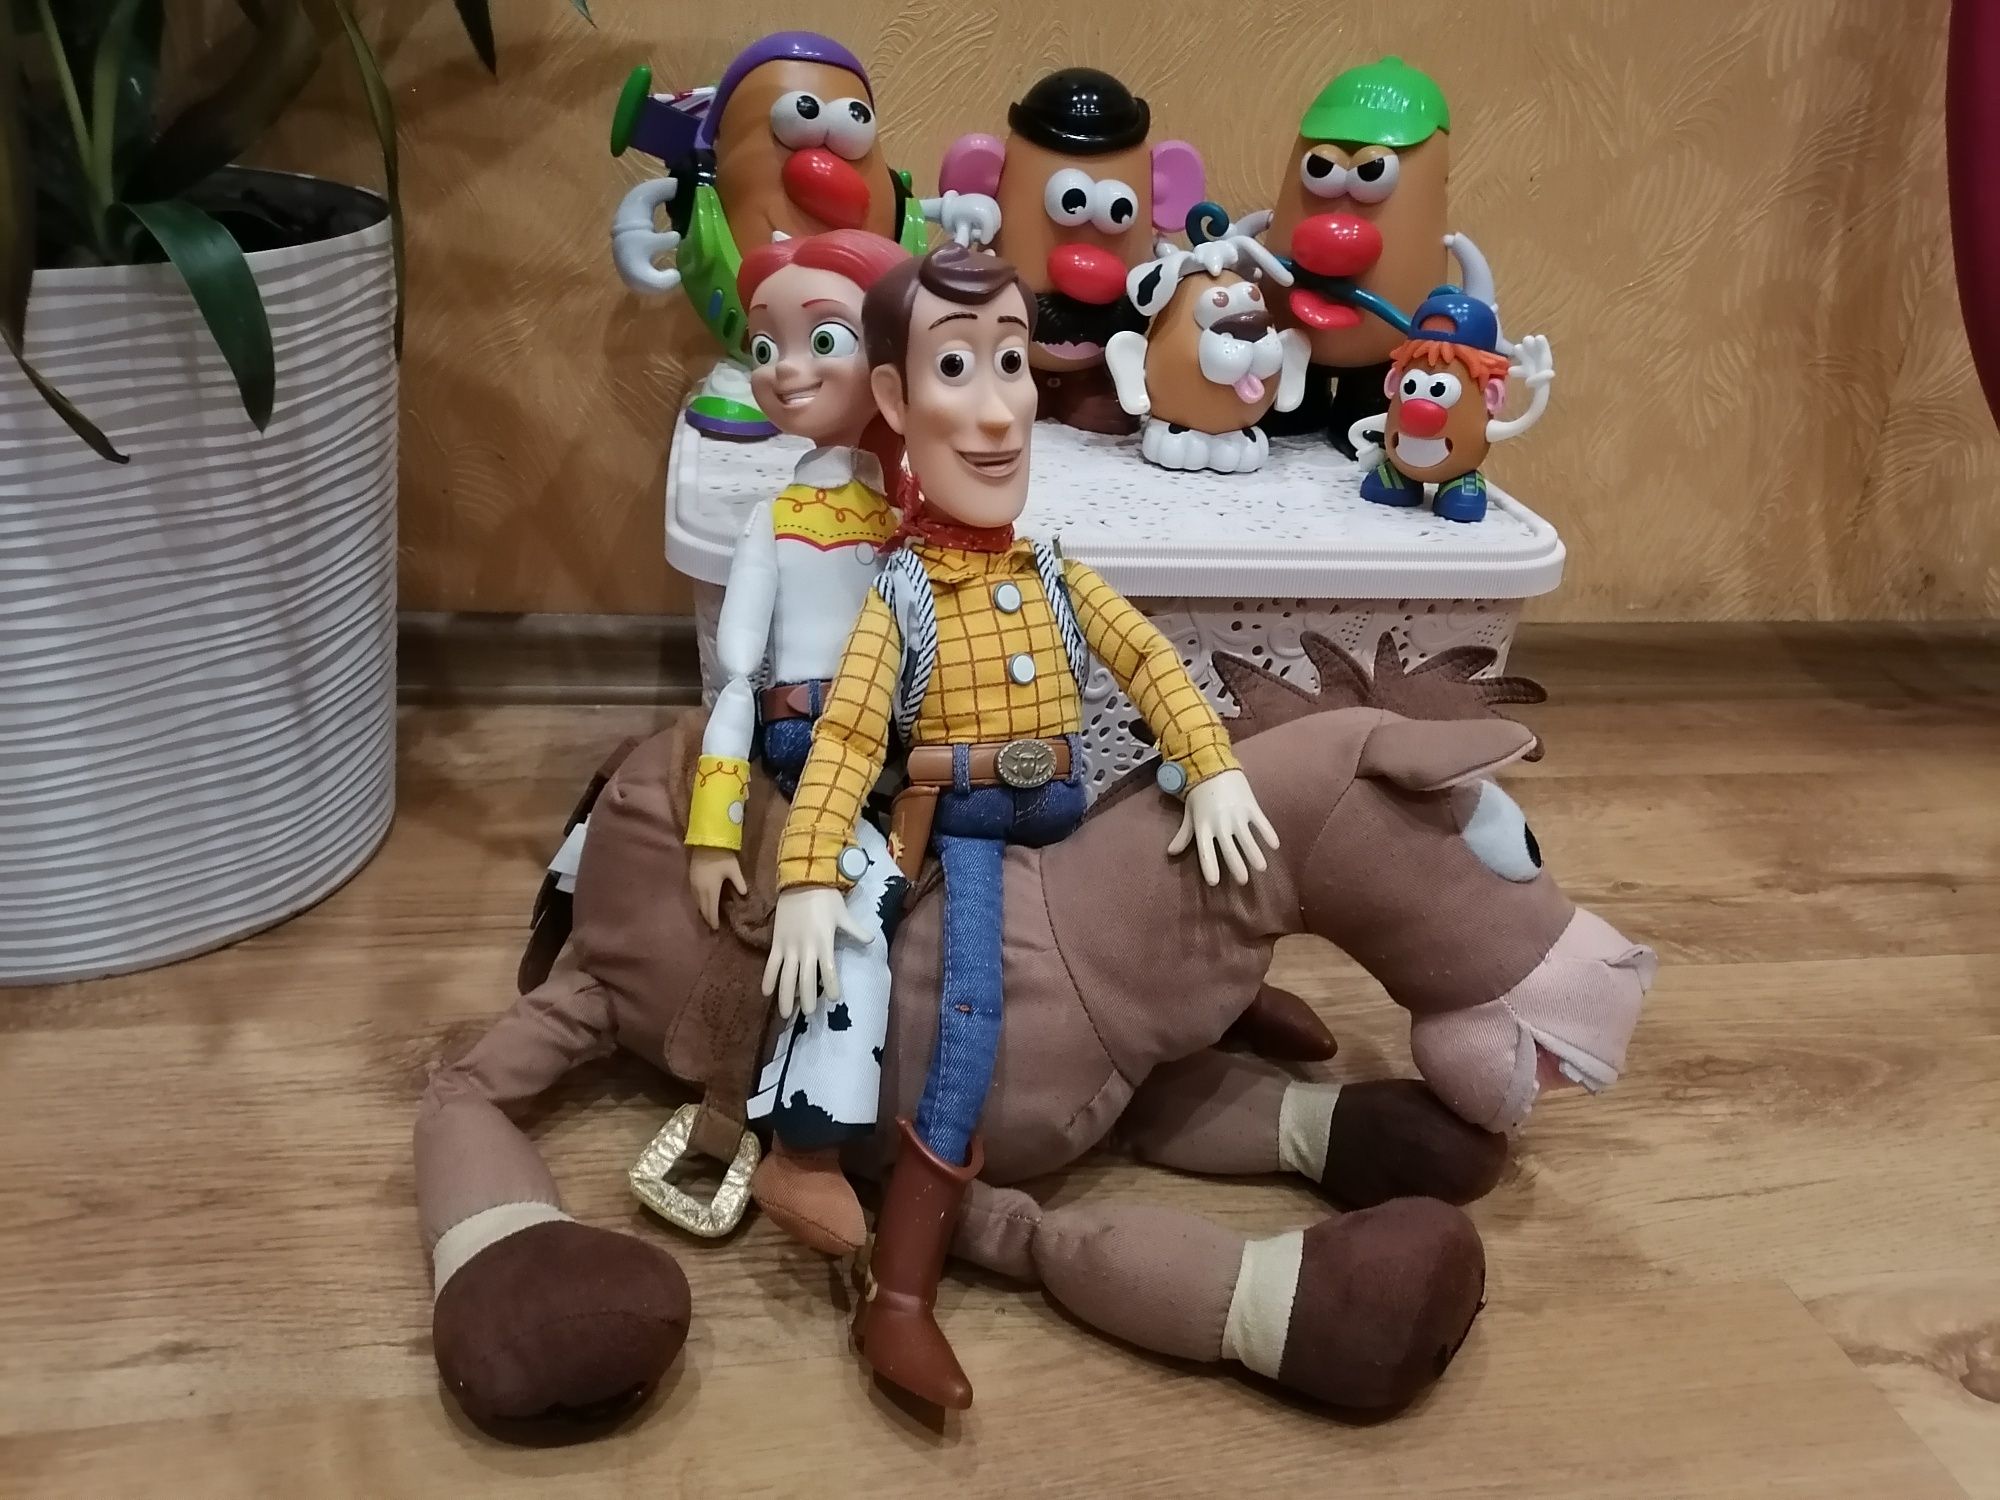 Історія іграшок, Баз, Вуді, Містер картопля